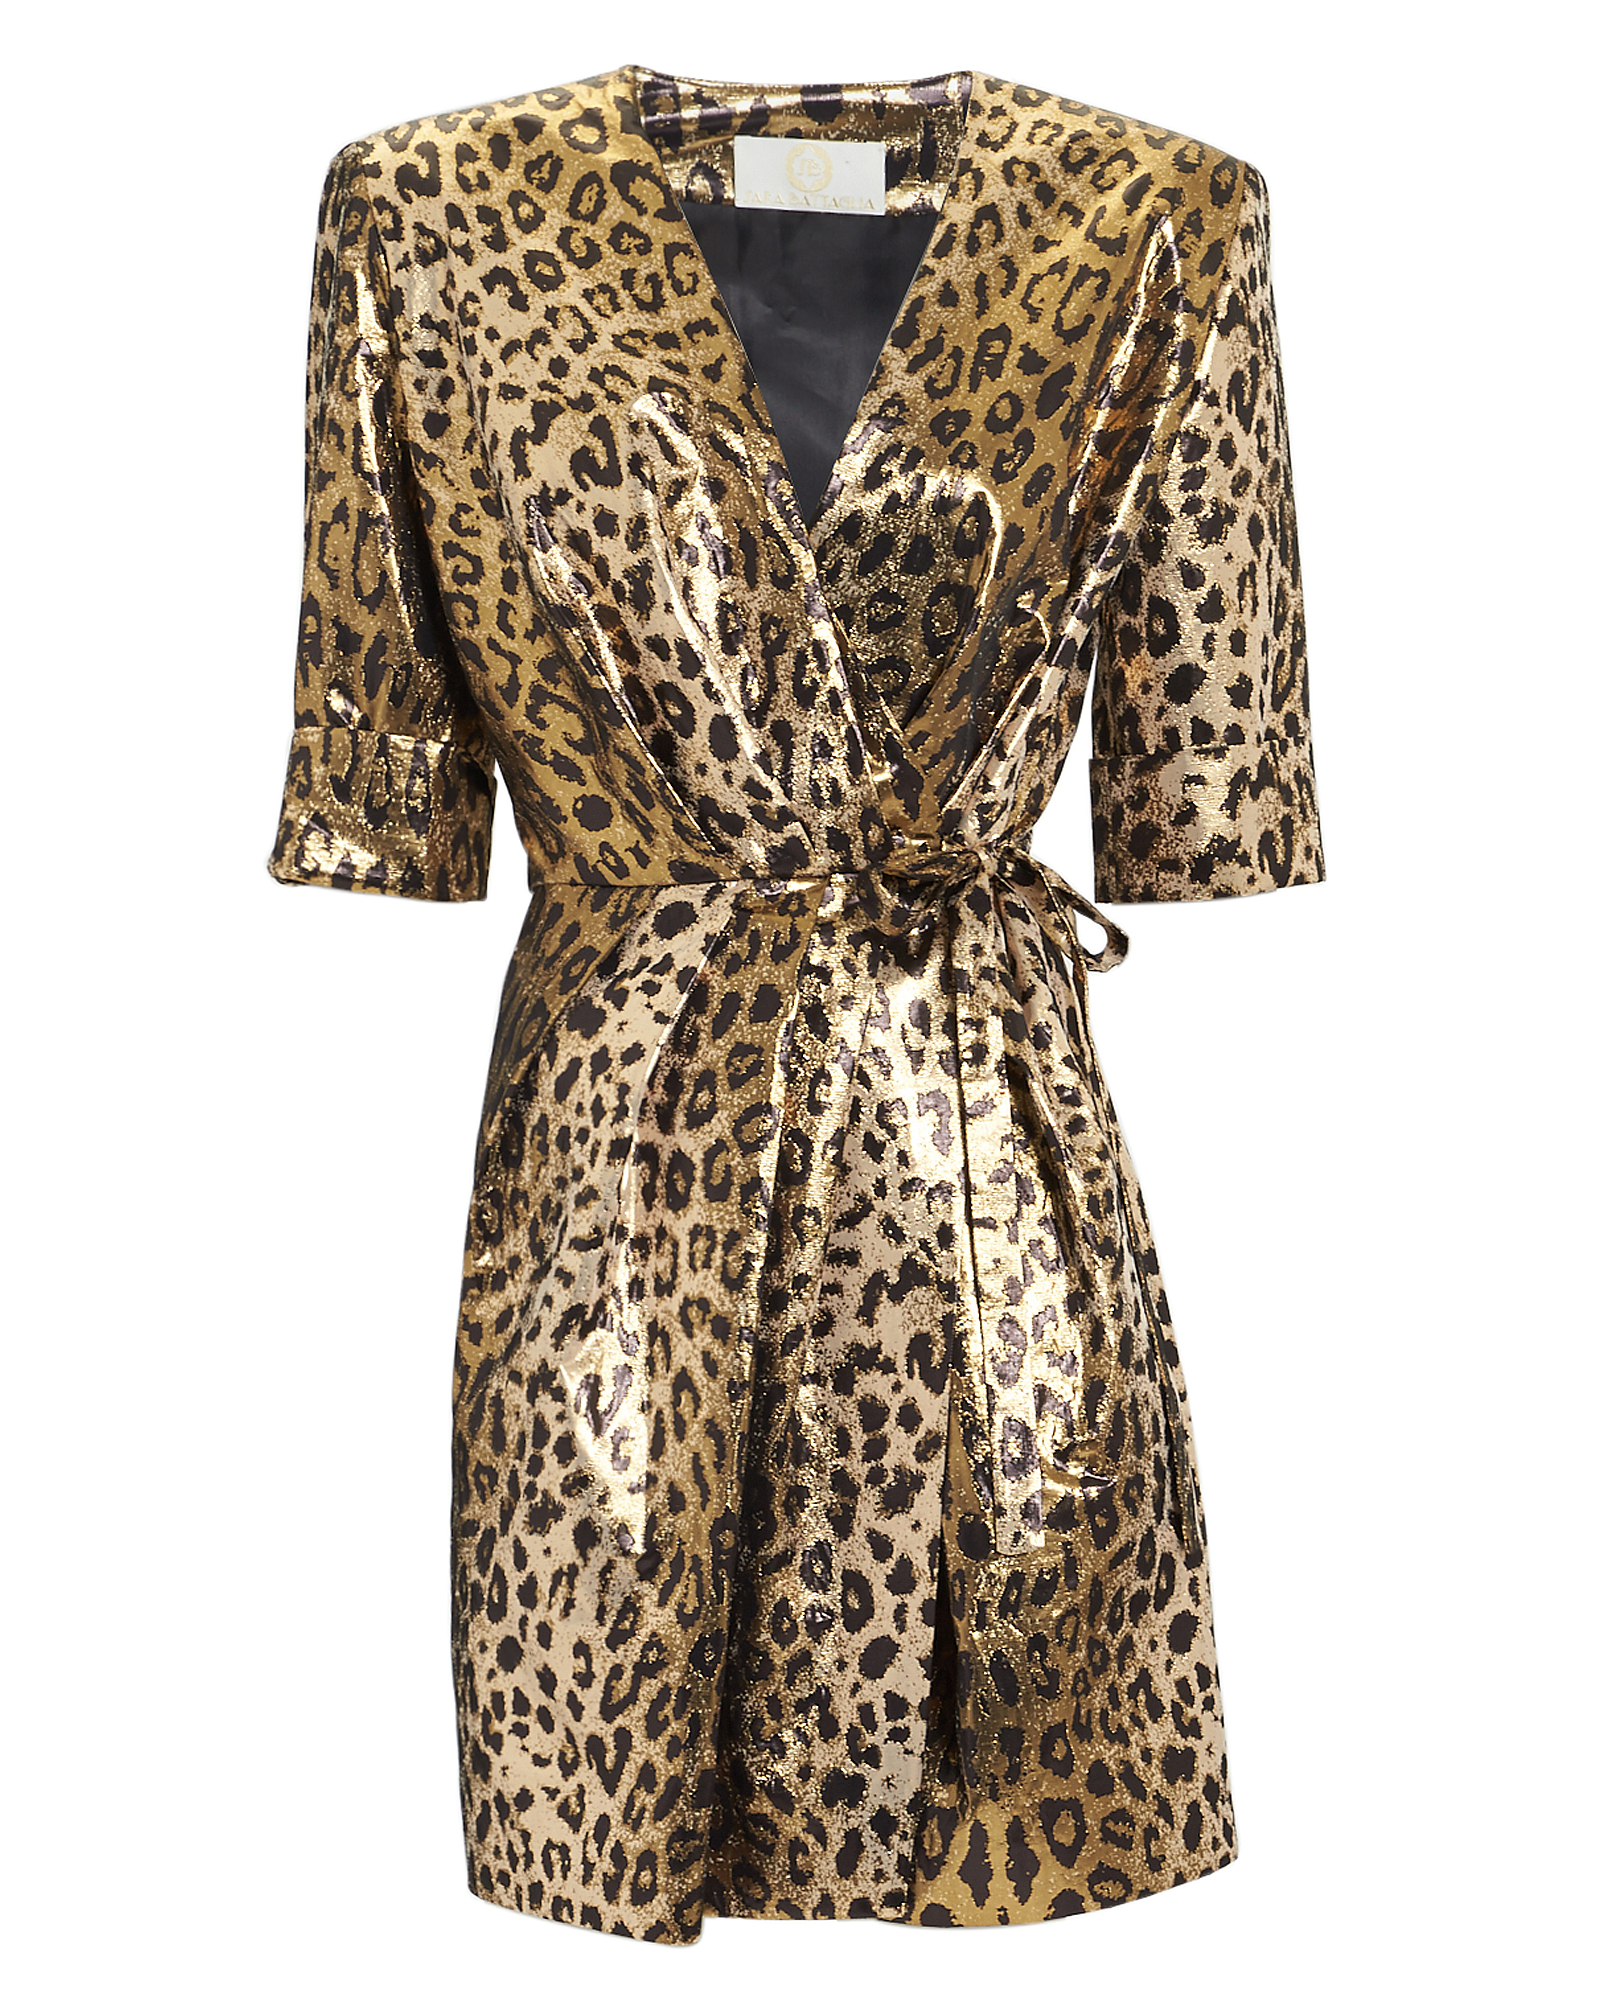 SARA BATTAGLIA Leopard Lamé Mini Dress,SB5010305S9.098